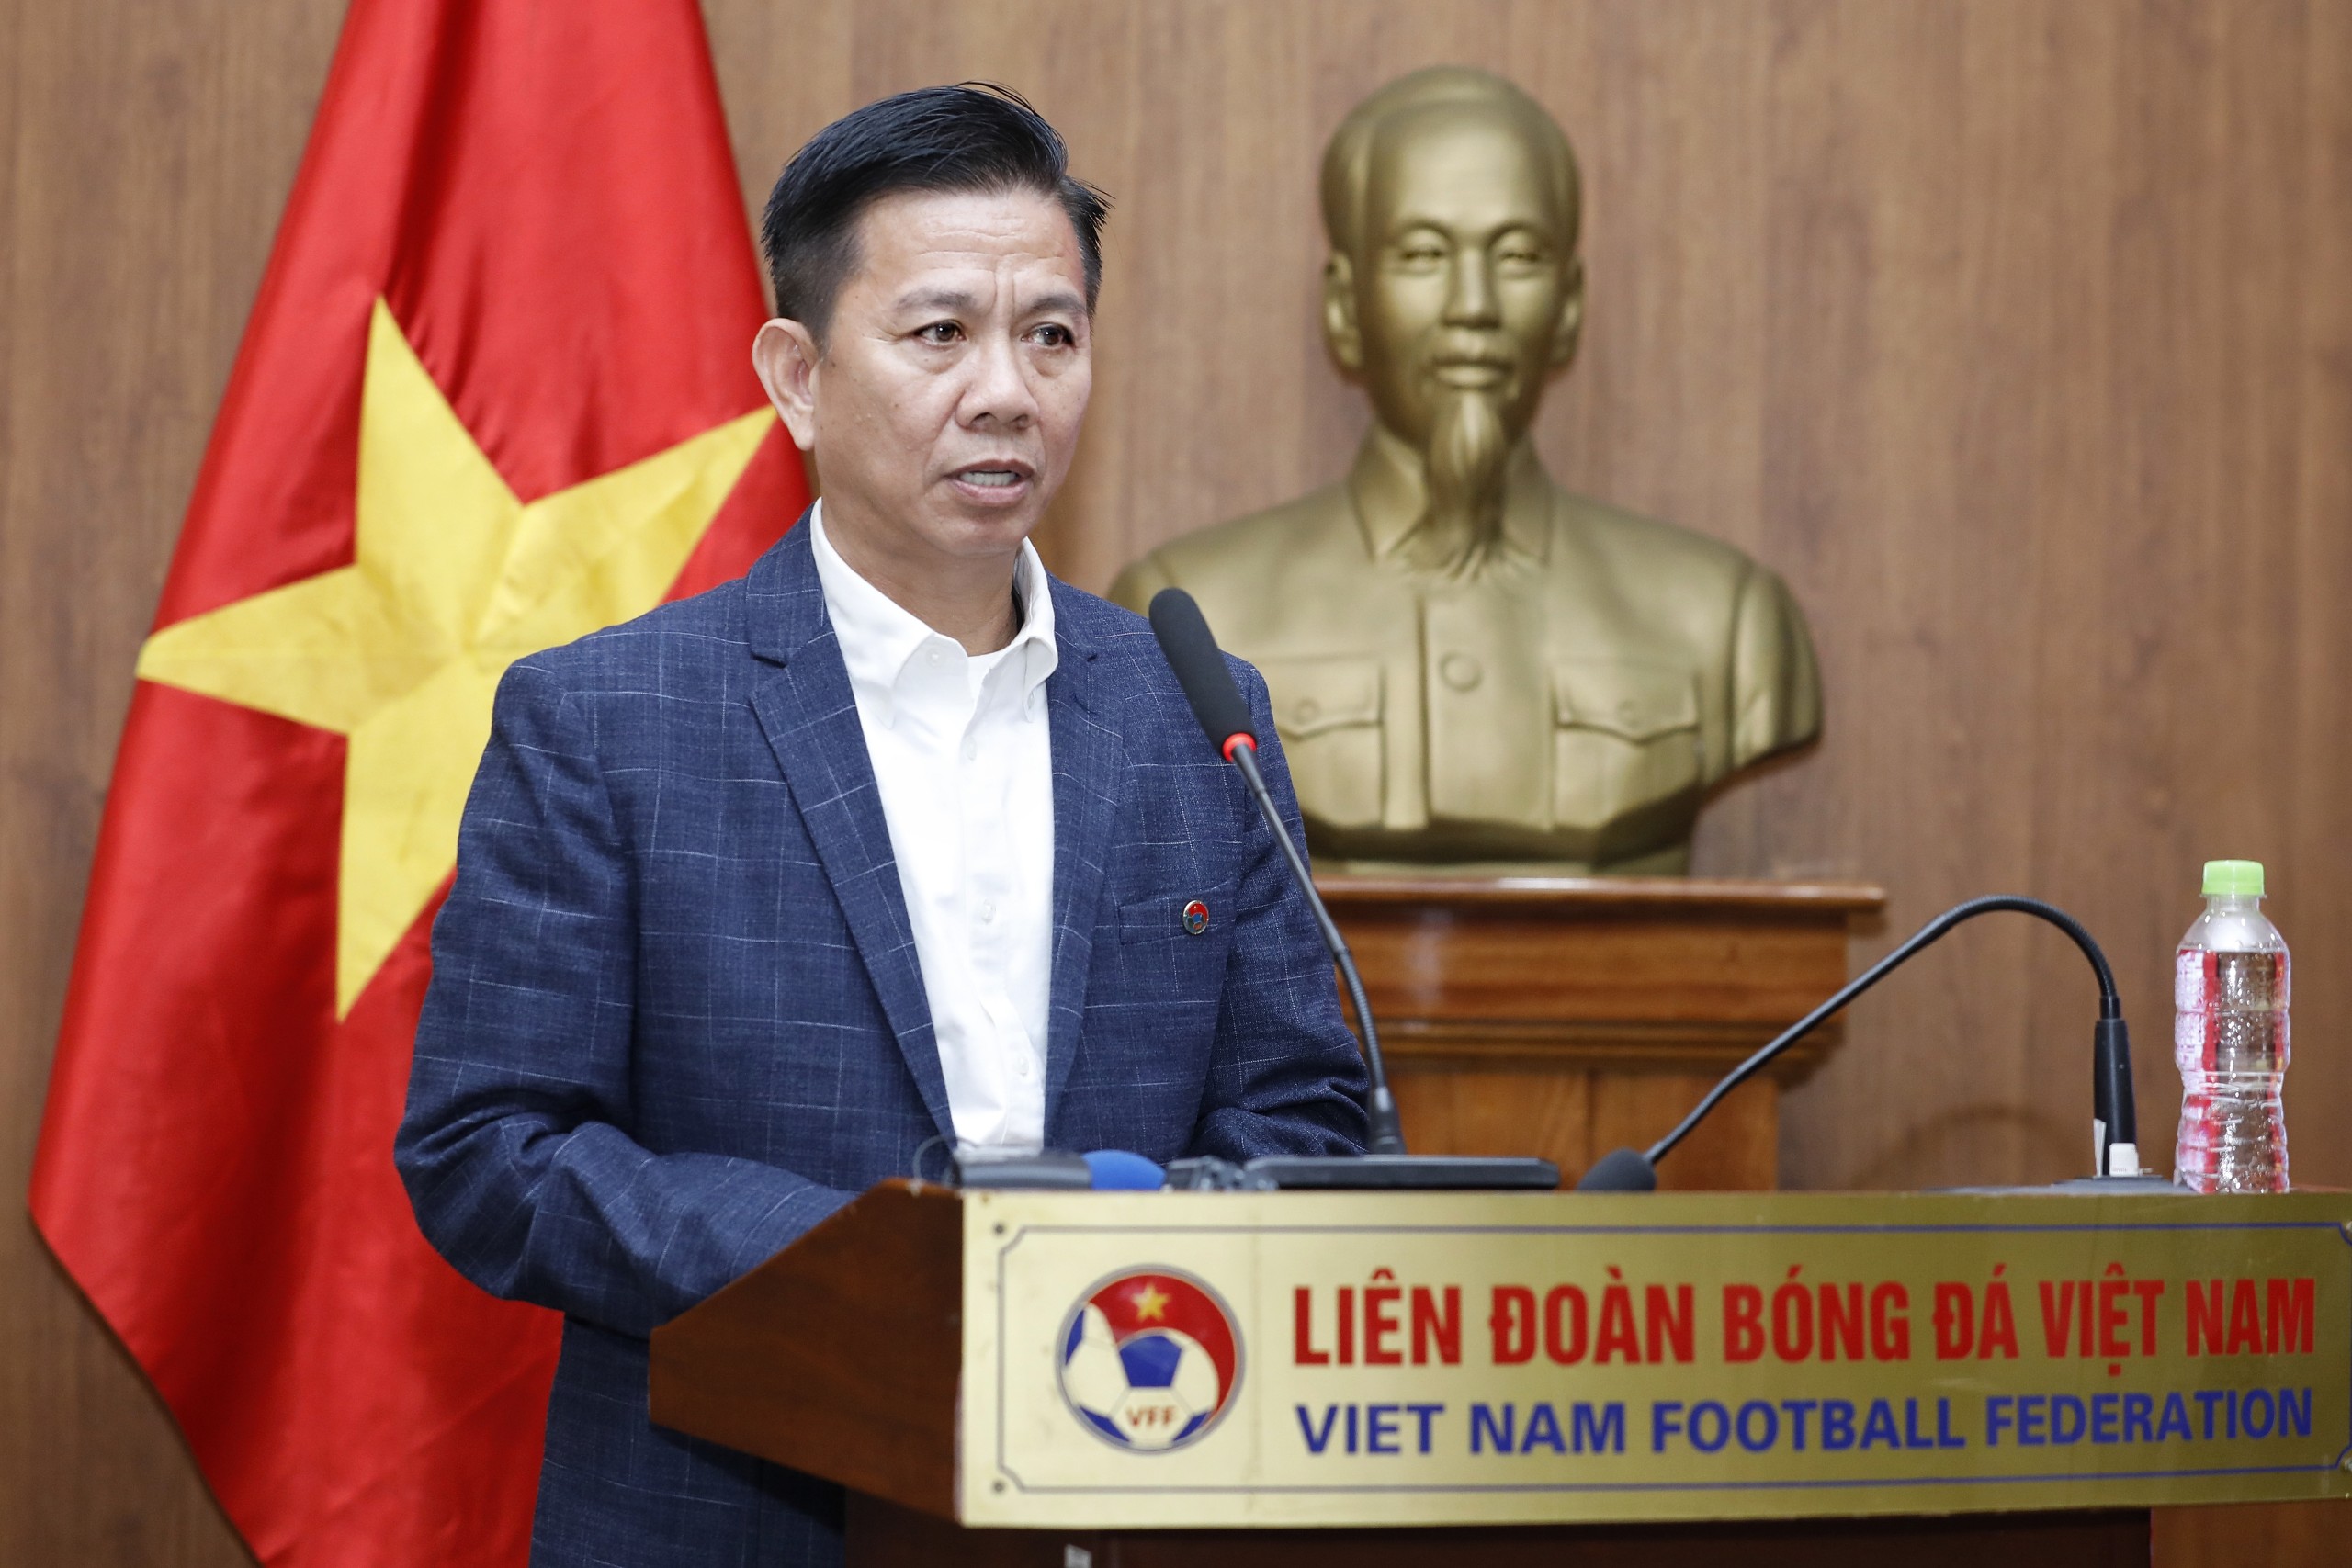 Lịch thi đấu U.23 Việt Nam mới nhất ở châu Á: Người hâm mộ nhận tin cực vui- Ảnh 3.